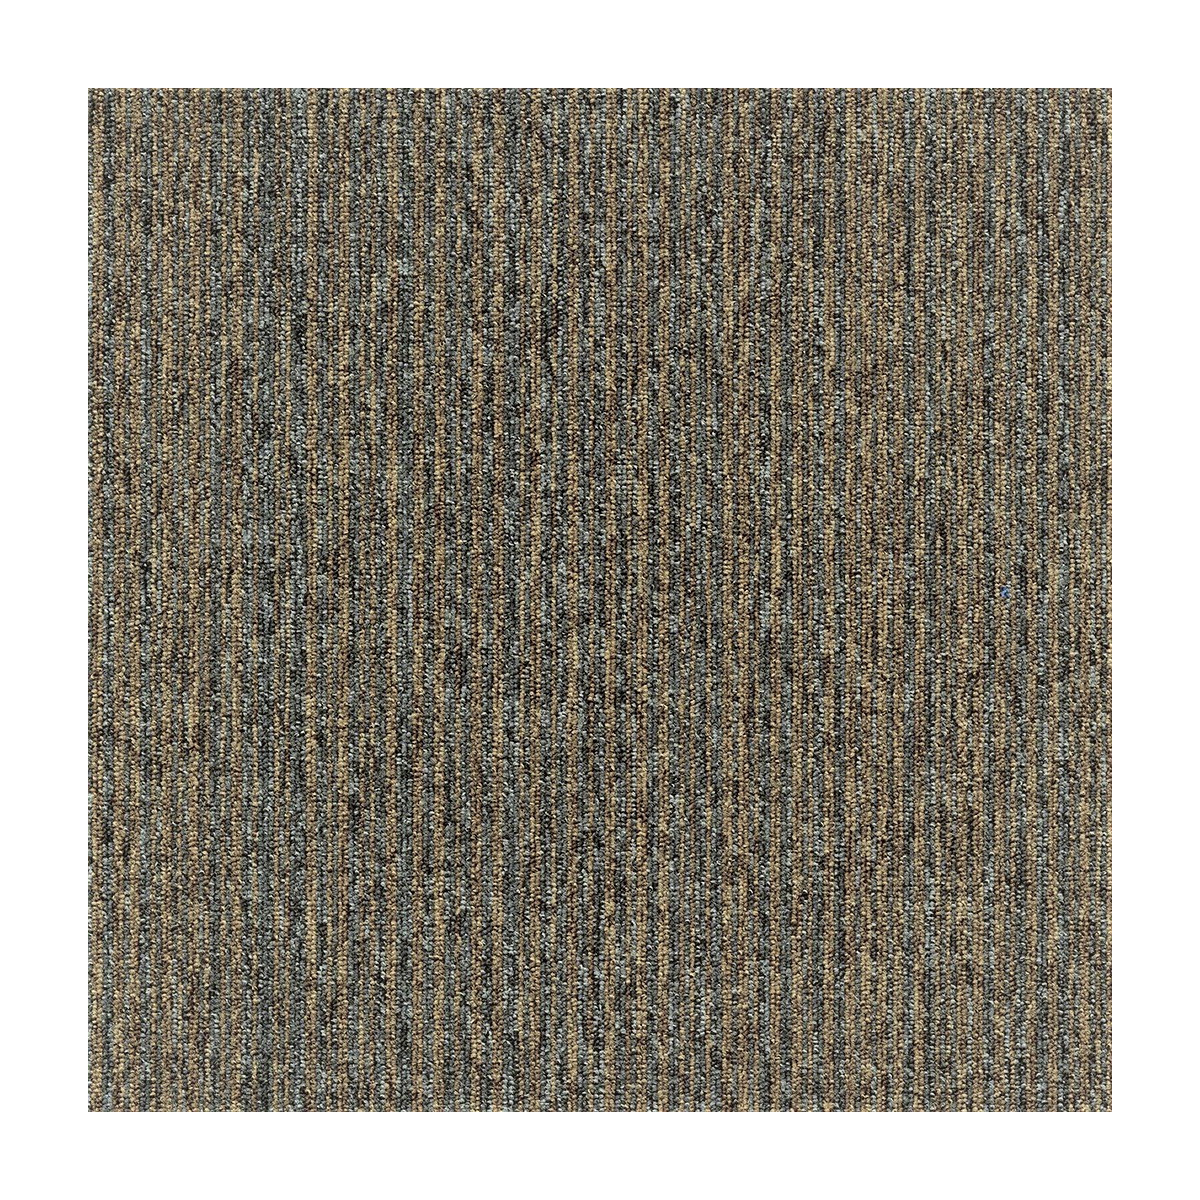 Kobercový čtverec Coral Lines 60309-50 hnědě-šedý